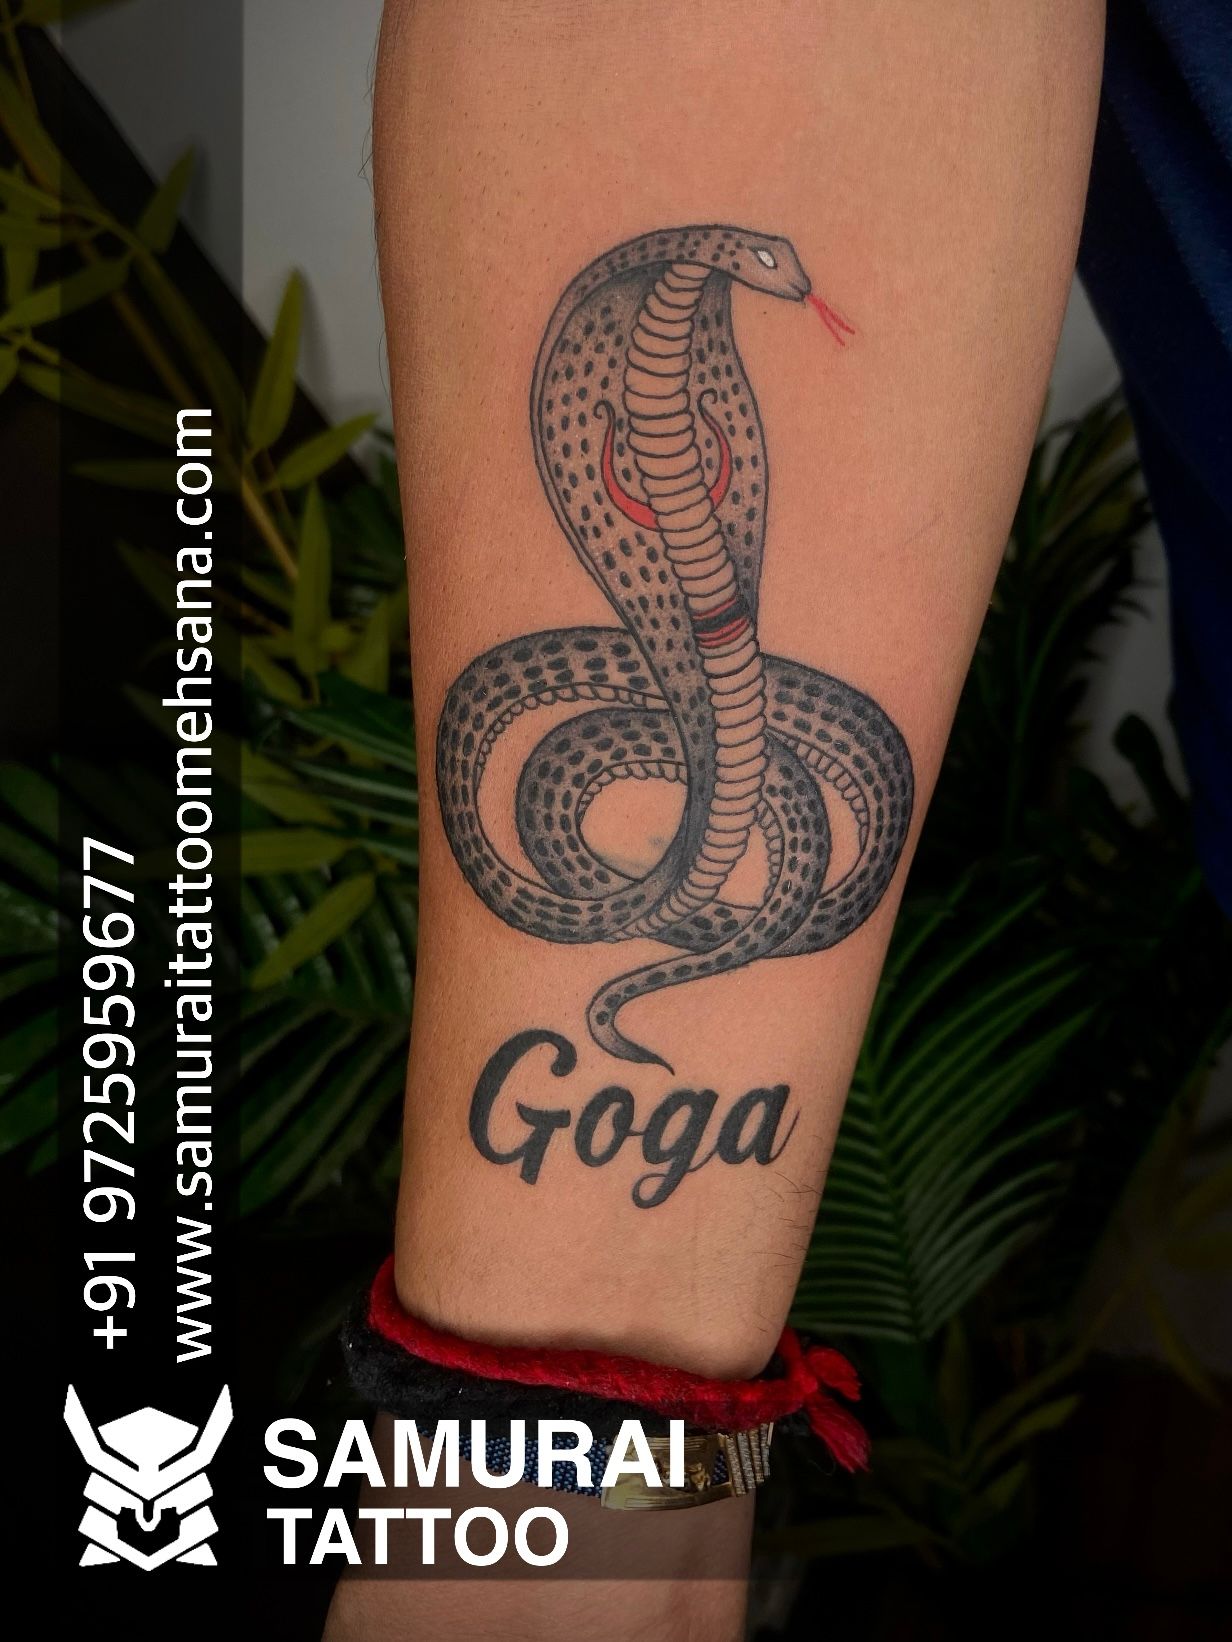 Xユーザーのsamurai tattoo mehsanaさん: 「Goga maharaj tattoo |Goga tattoo |Jay goga  tattoo |Jay goga maharaj tattoo https://t.co/2TuNKj1GjR」 / X